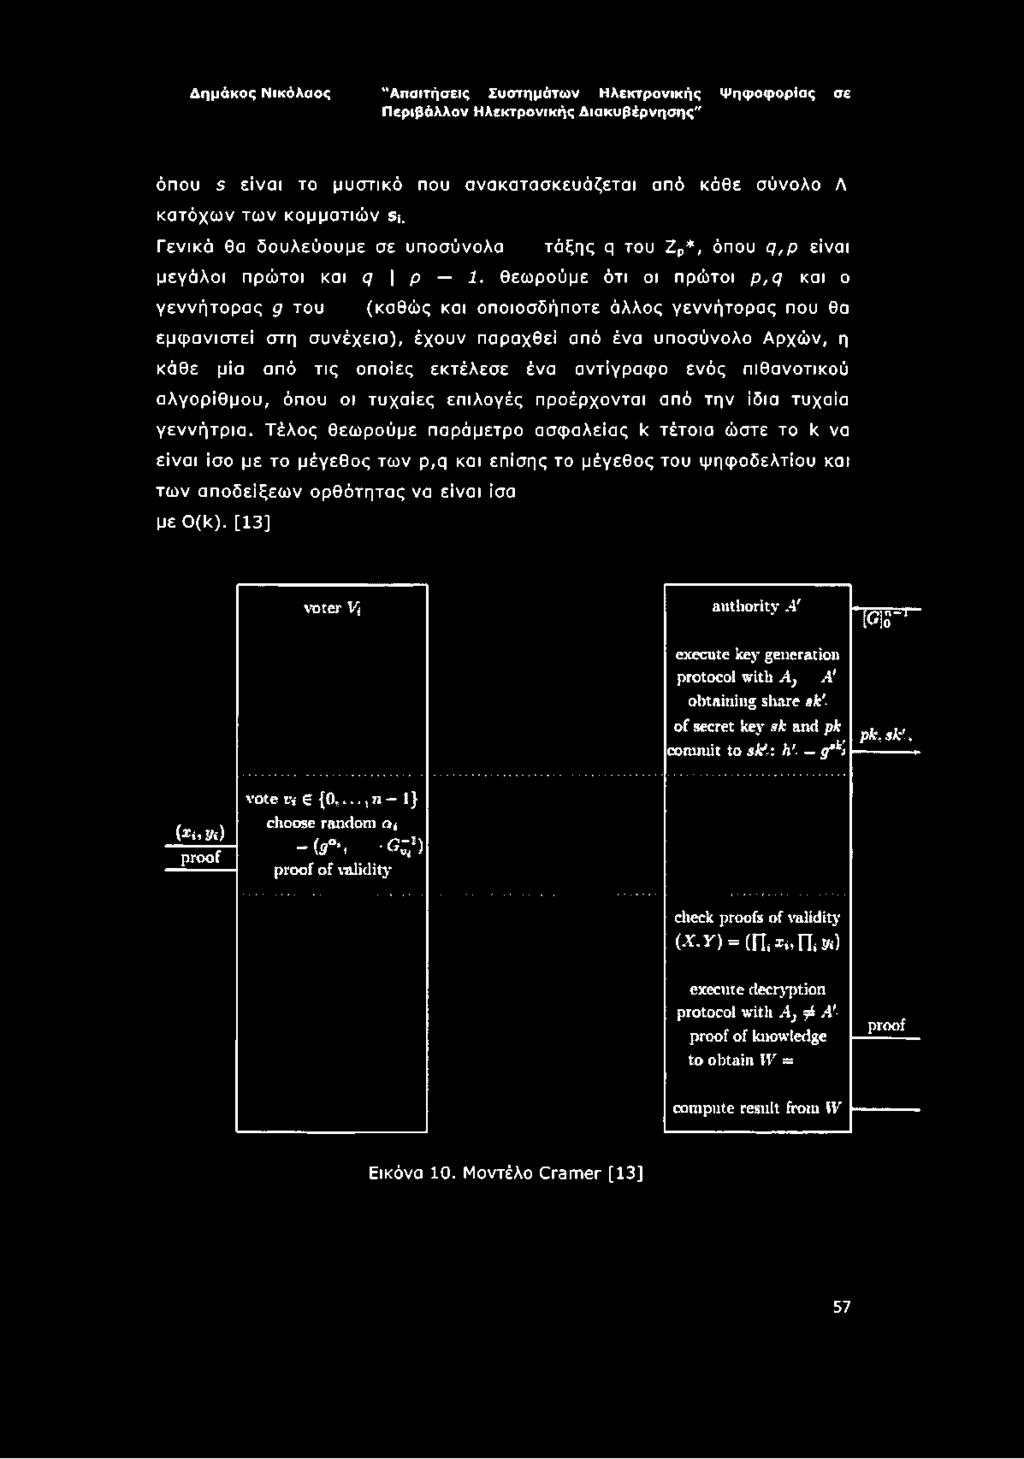 ένα αντίγραφο ενός πιθανοτικού αλγορίθμου, όπου οι τυχαίες επιλογές προέρχονται από την ίδια τυχαία γεννήτρια.